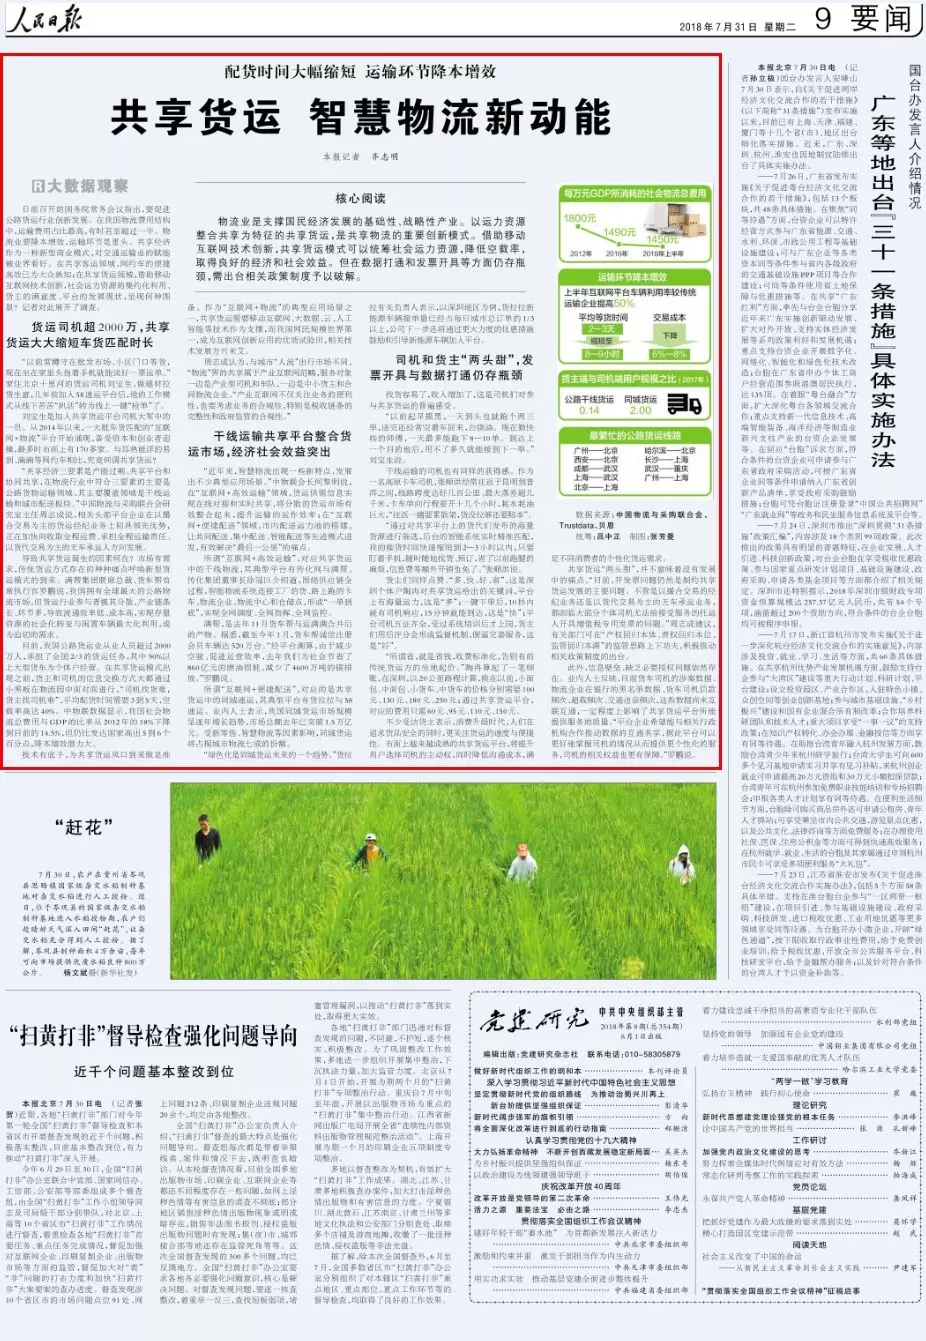 《人民日报》三赞货车帮 促进中国物流业降本增效